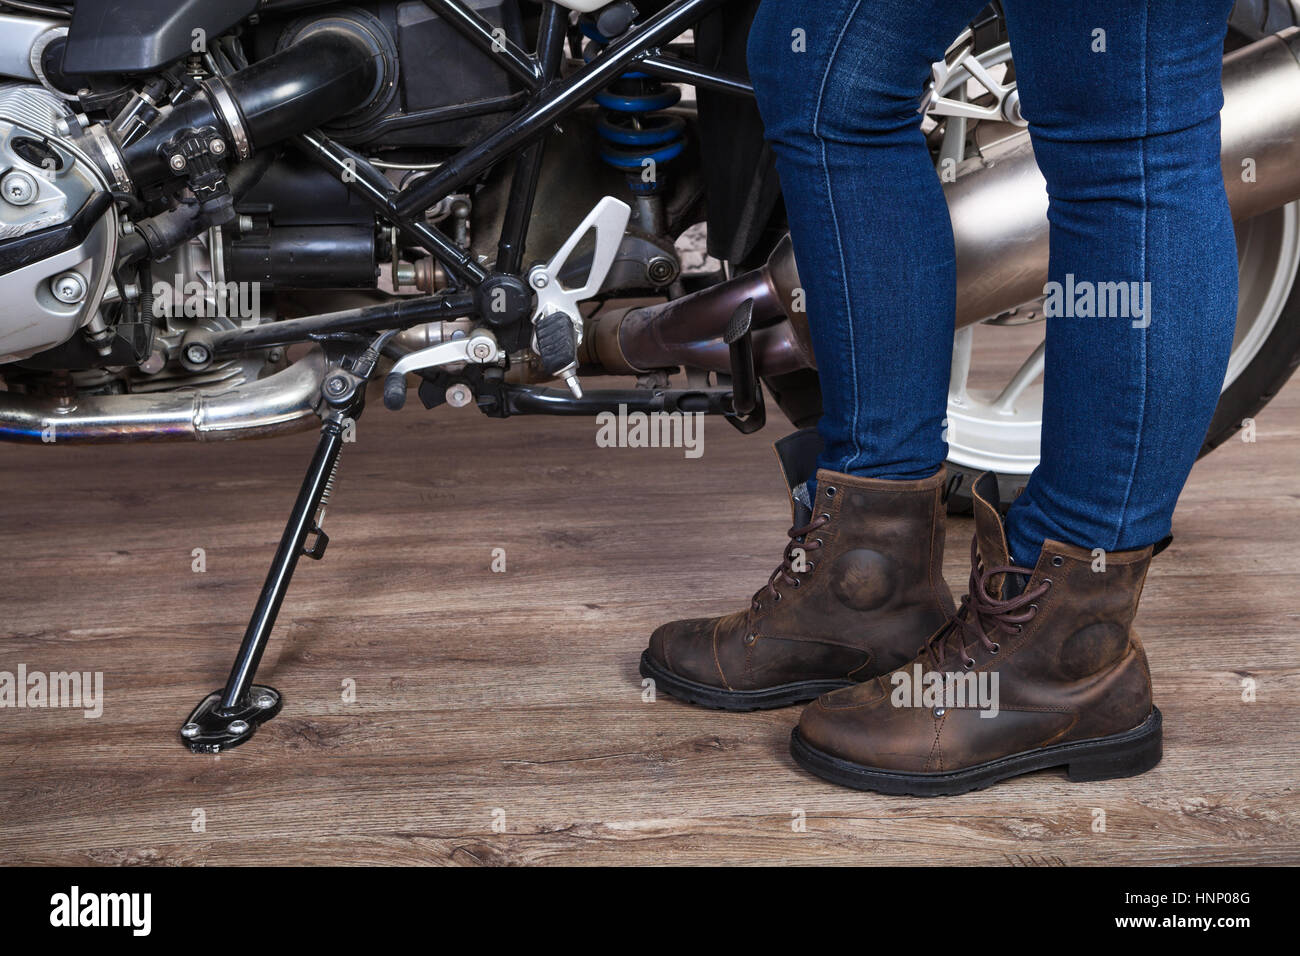 Weibliche Beine tragen braune Leder Sicherheitsschuhe für Motorrad sind in  der Nähe von Motorrad, Nahaufnahme Stockfotografie - Alamy